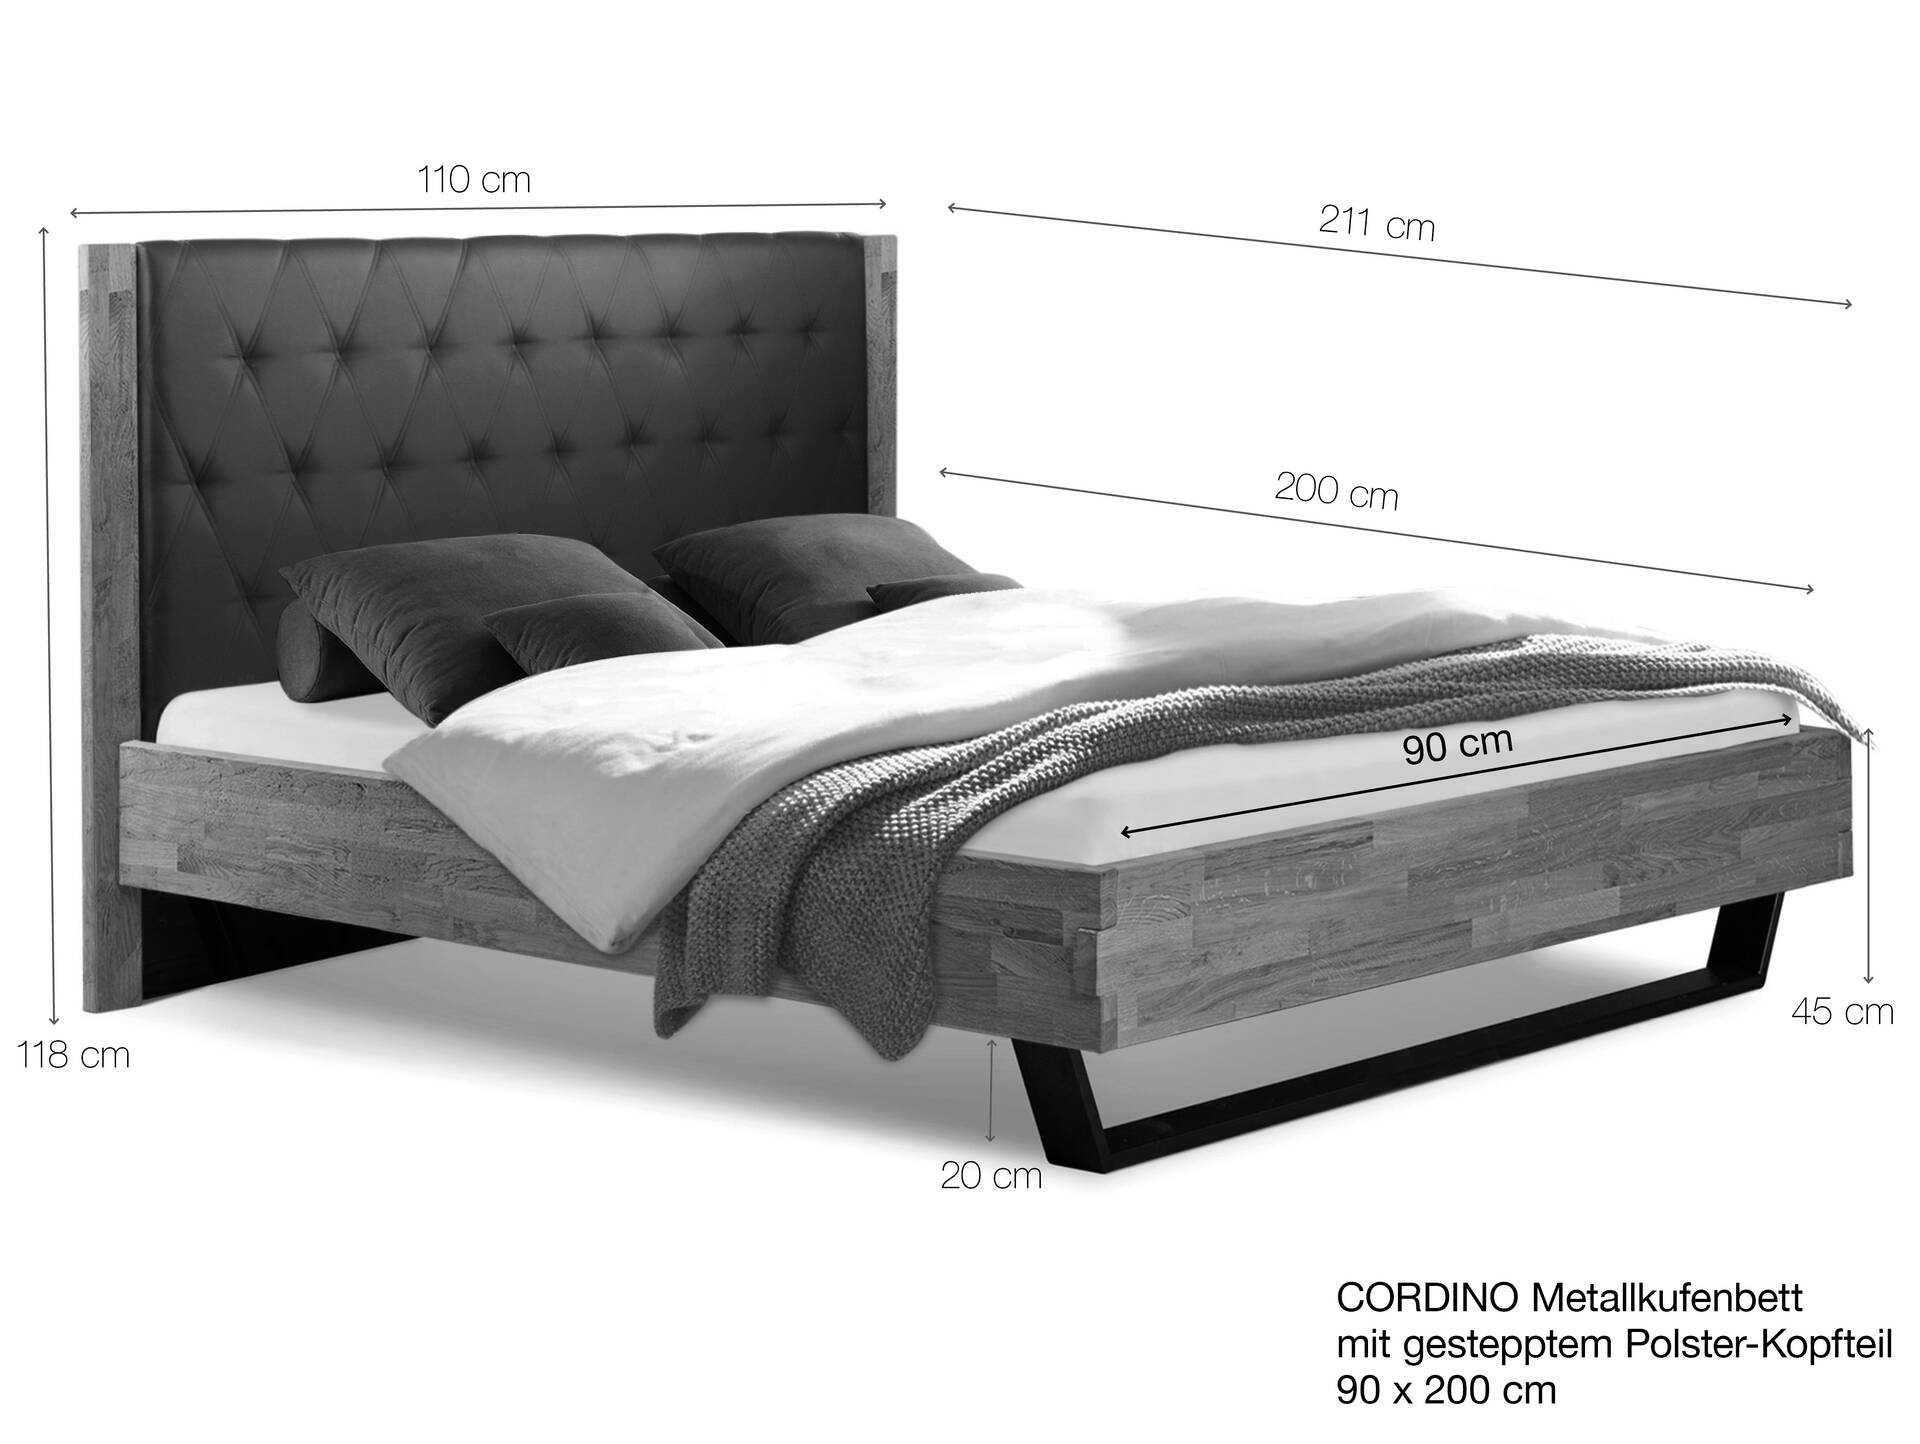 CORDINO Kufenbett aus Eiche mit gestepptem Polsterkopfteil, Material Massivholz 90 x 200 cm | Eiche lackiert | Stoff Anthrazit | gebürstet